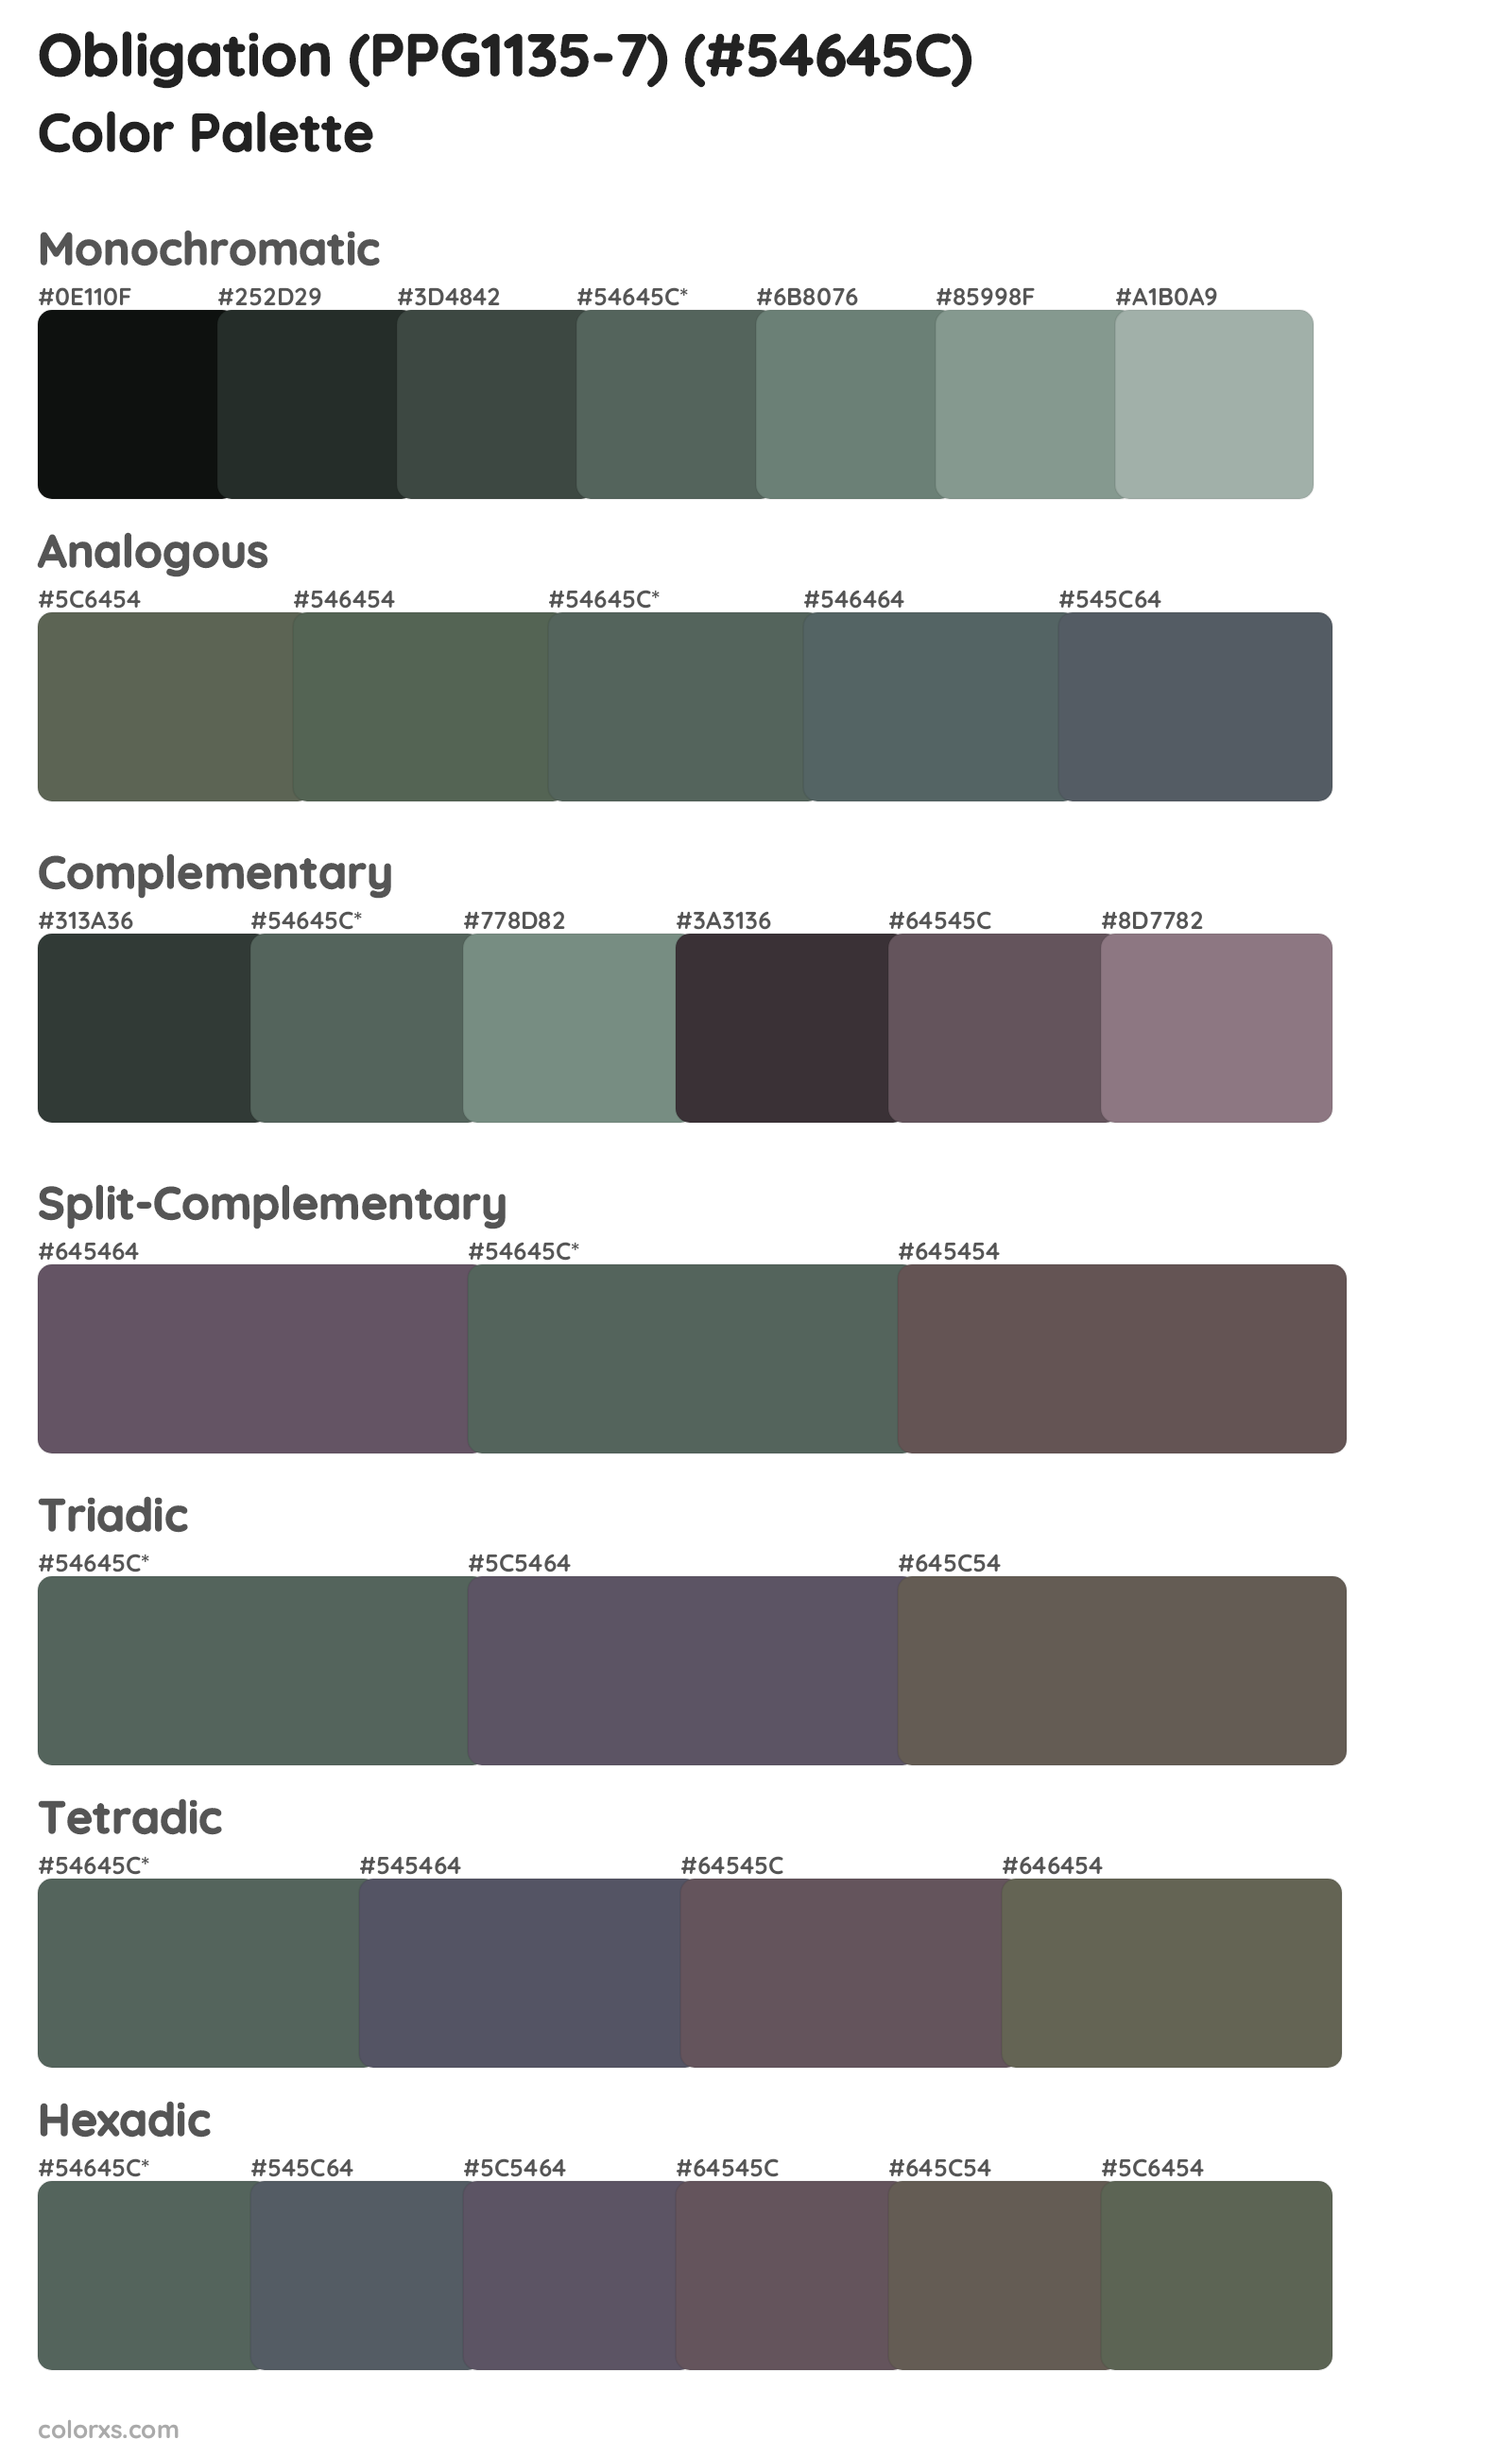 Obligation (PPG1135-7) Color Scheme Palettes